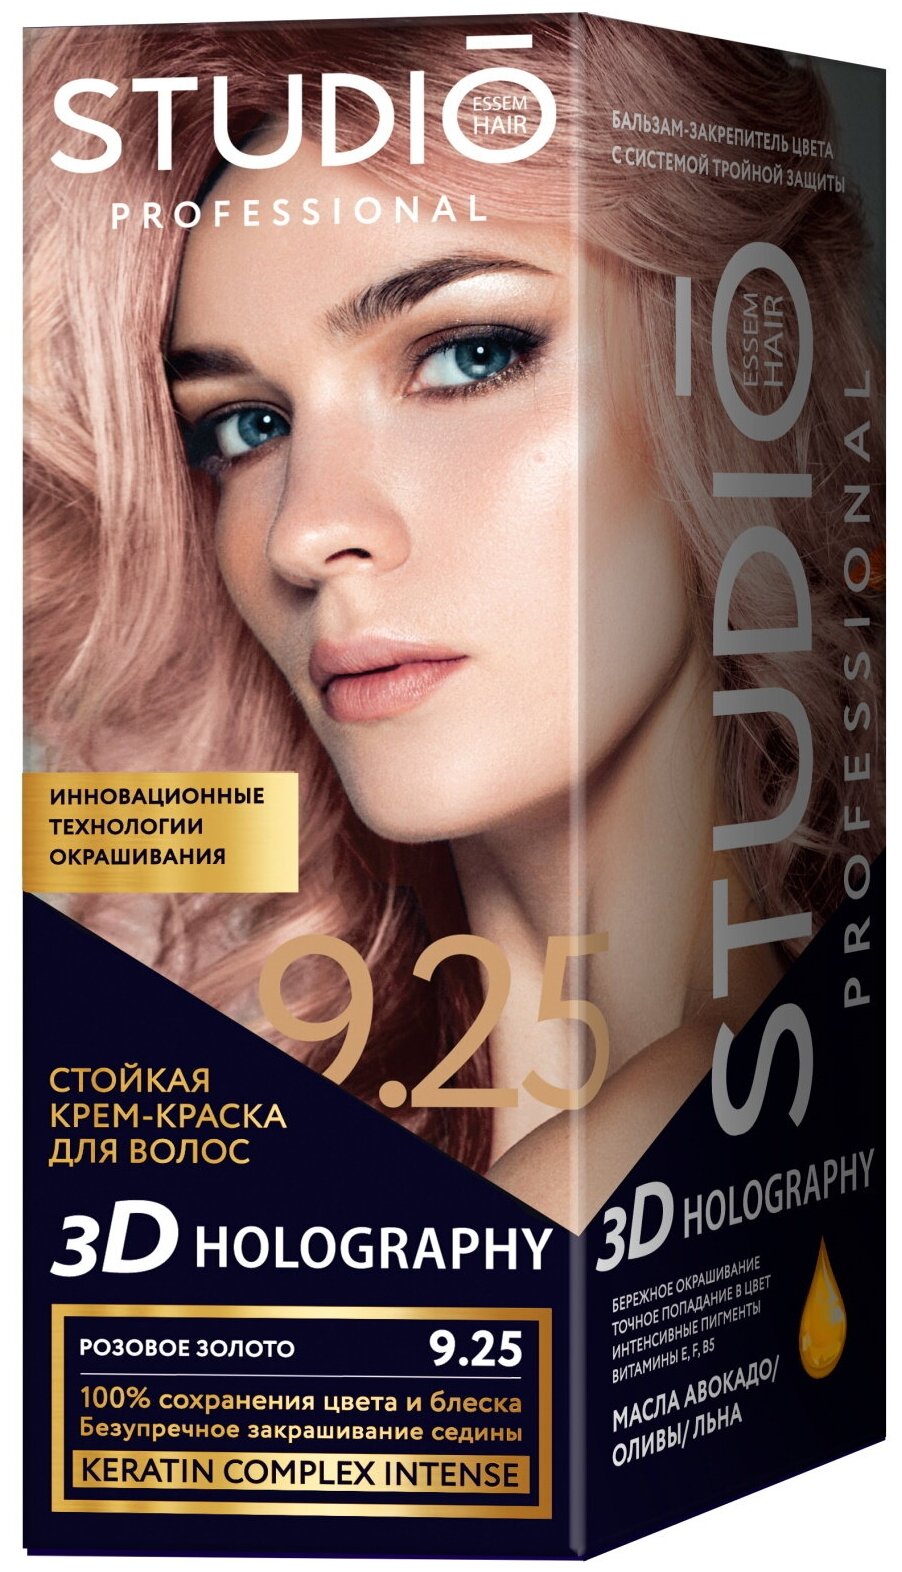 Комплект 3D HOLOGRAPHY для окрашивания волос STUDIO PROFESSIONAL 9.25 розовое золото 2*50+15 мл